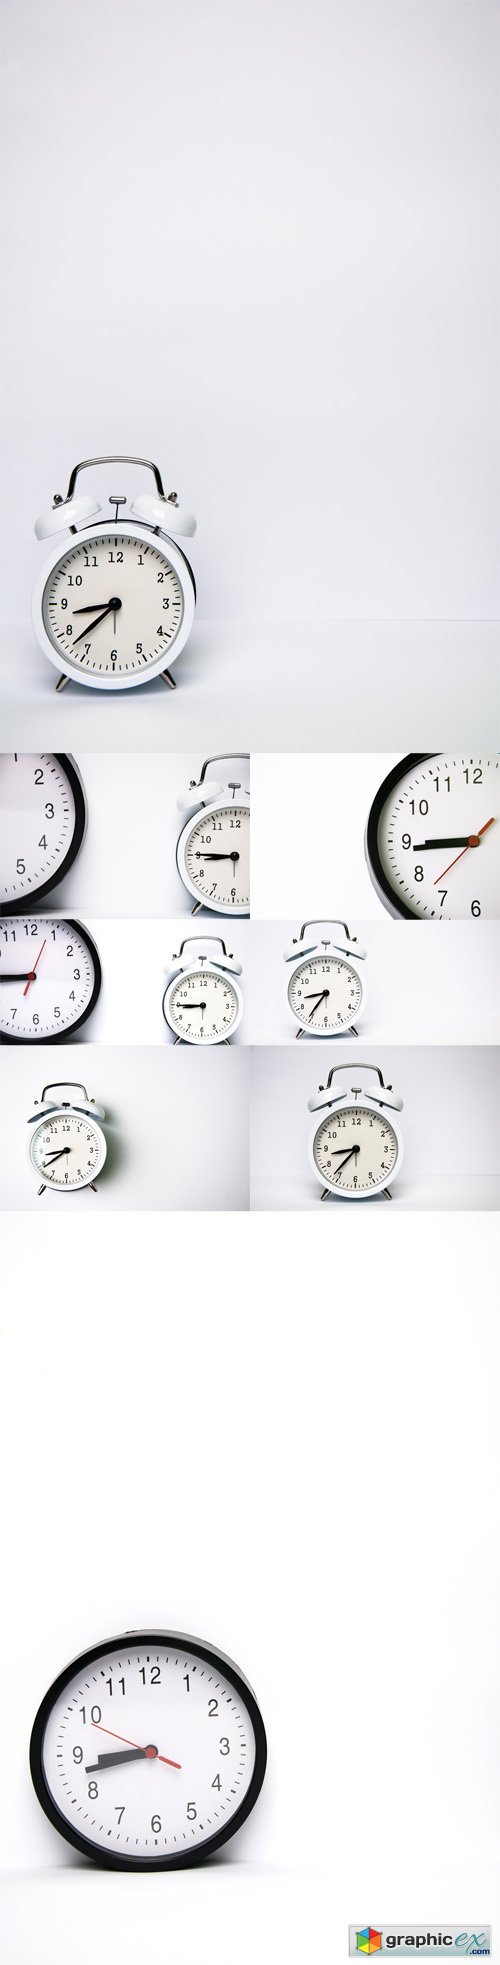 Photo Set - Clocks Isolated on White Background